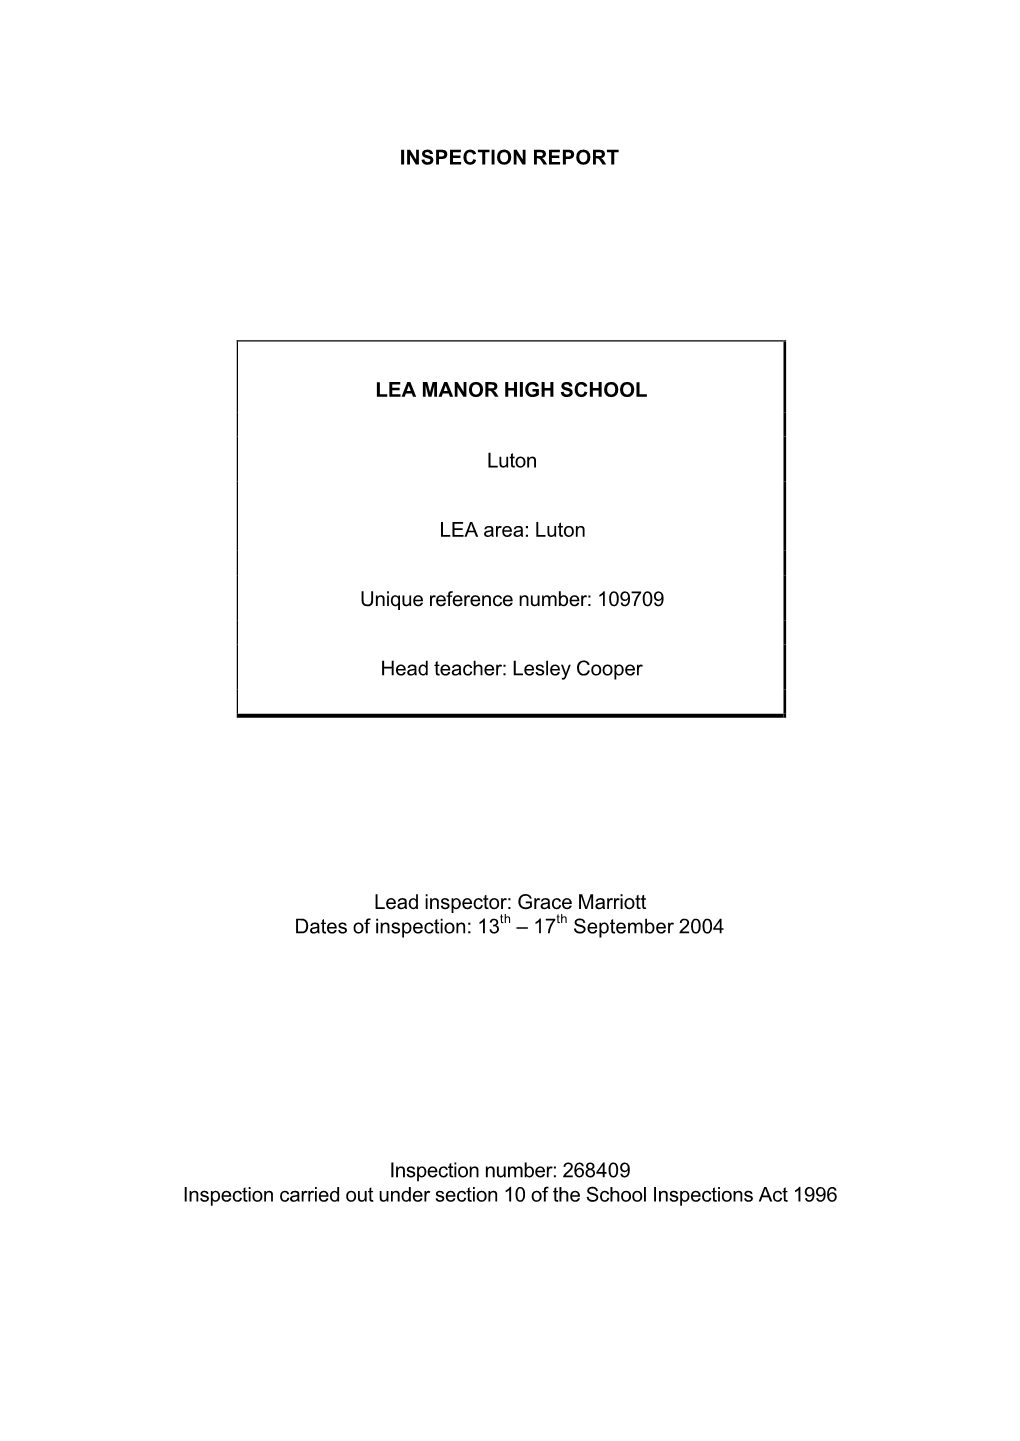 INSPECTION REPORT LEA MANOR HIGH SCHOOL Luton LEA Area